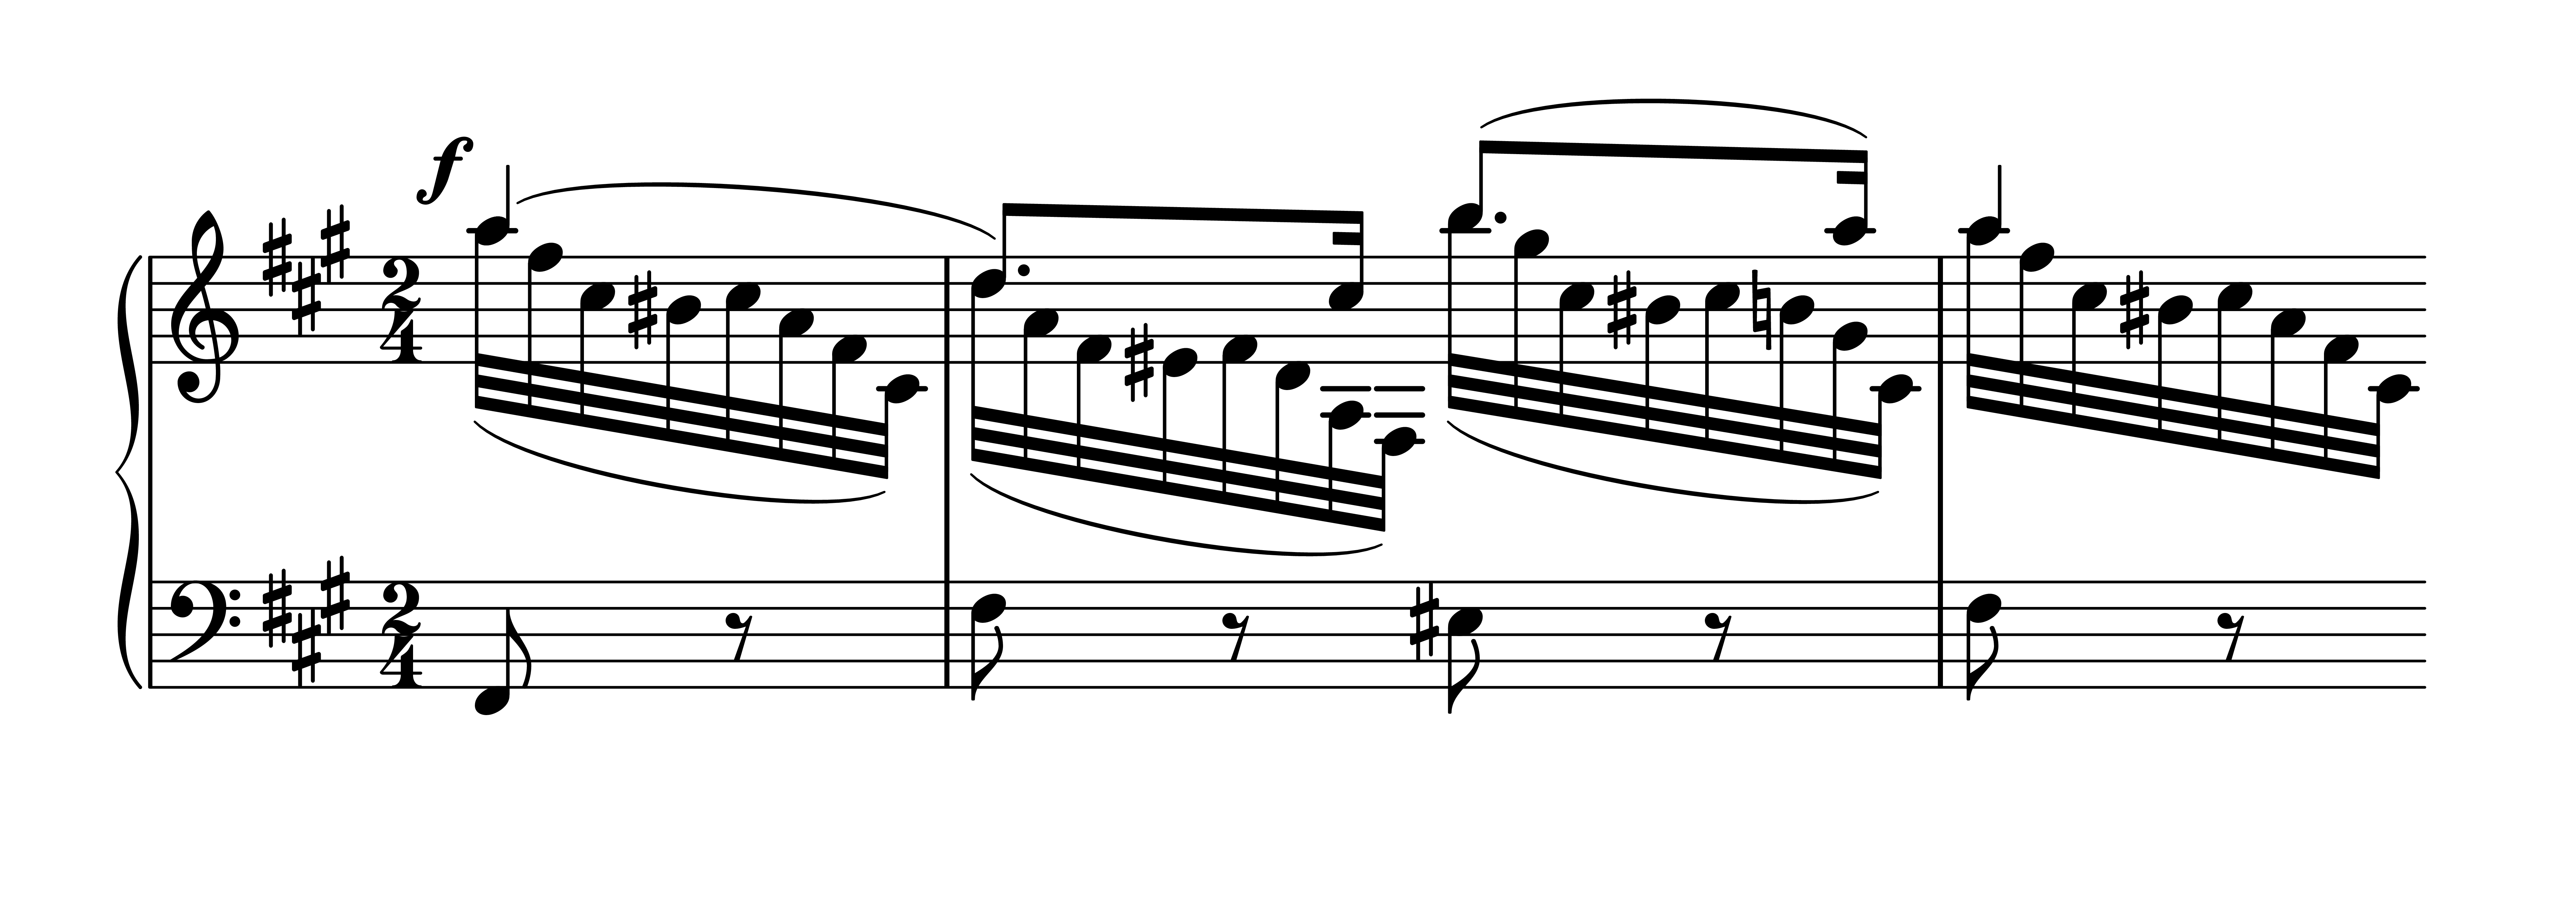 Es. 2: Robert Schumann, op. 133 n. 3, bb. 38-40